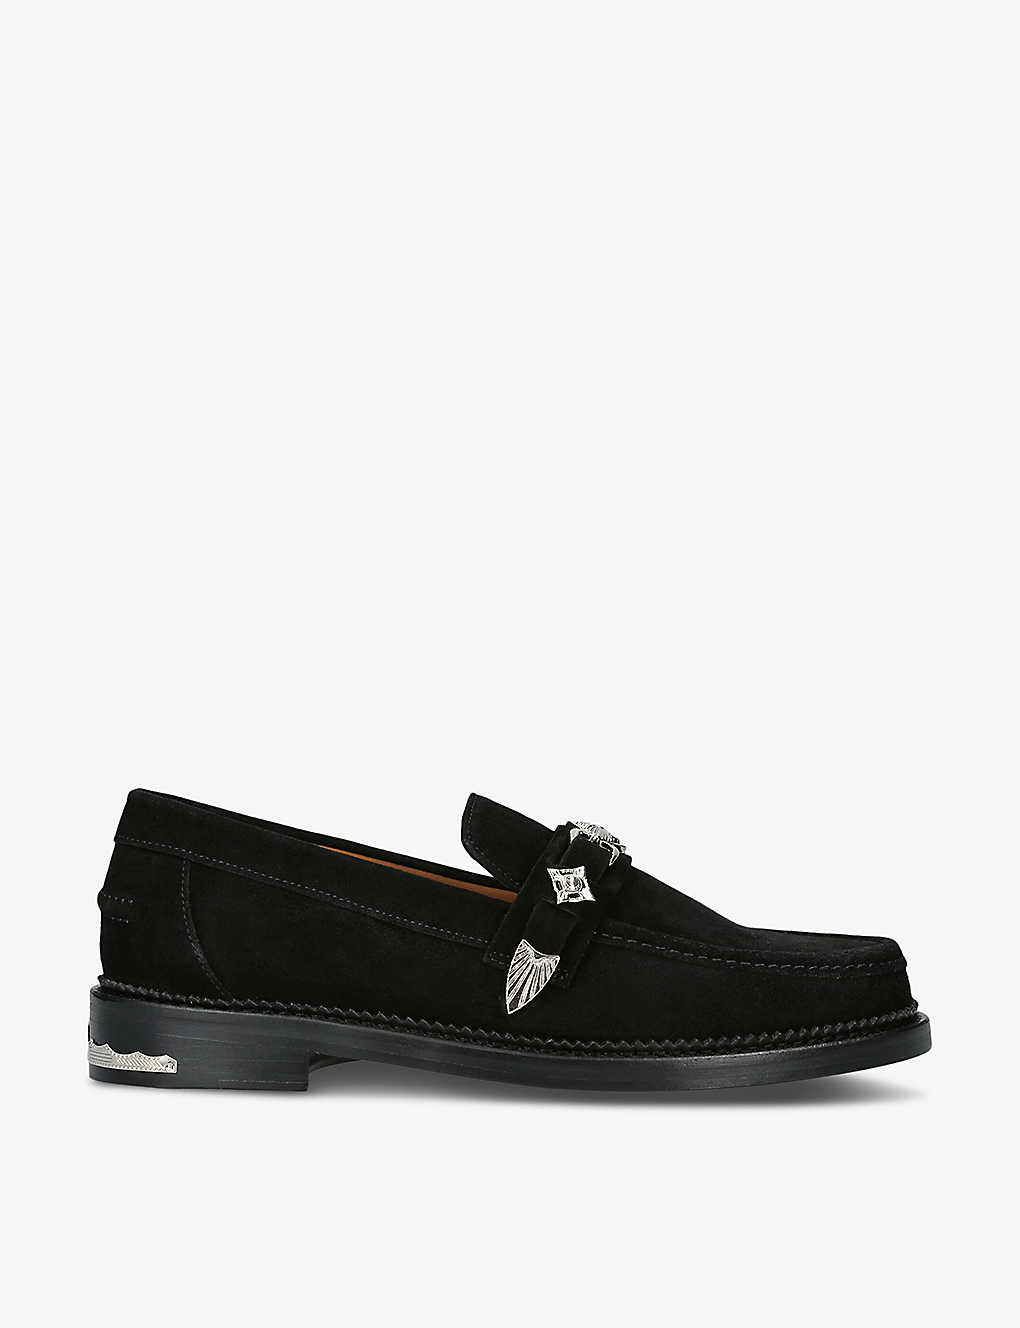 Shop Toga Virilis Men's Black Hardware-embellished Suede Loafers